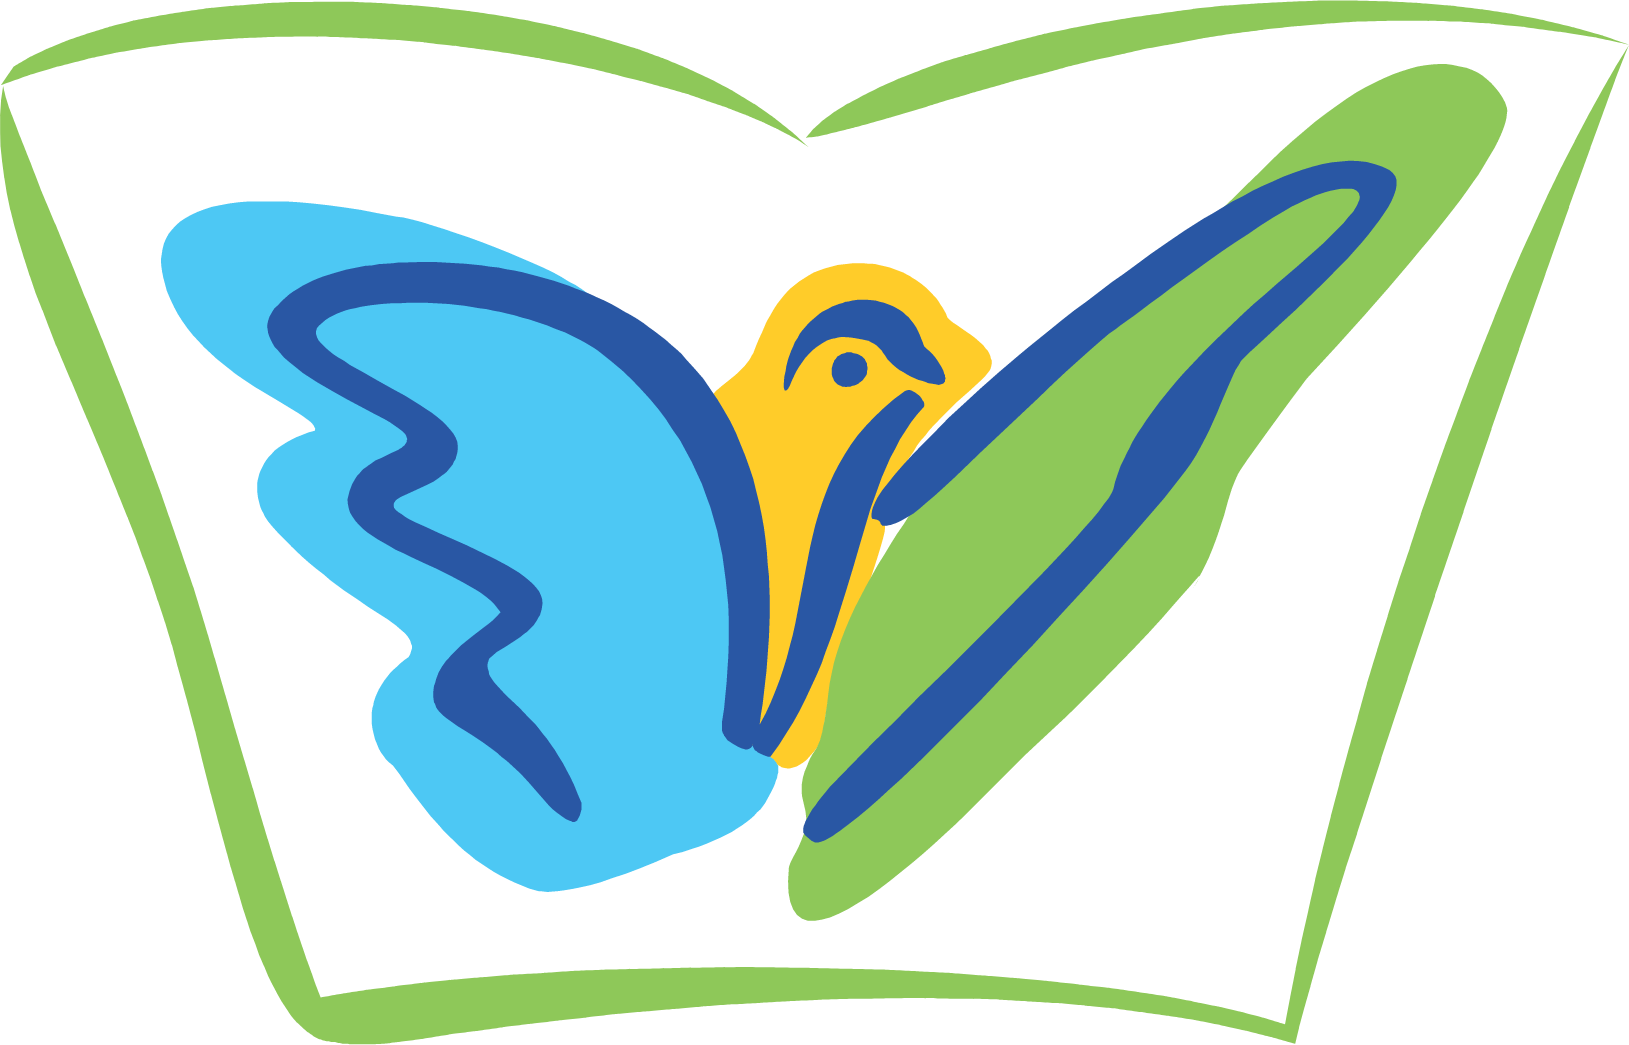 Jubilant Life Sciences logo (transparent PNG)